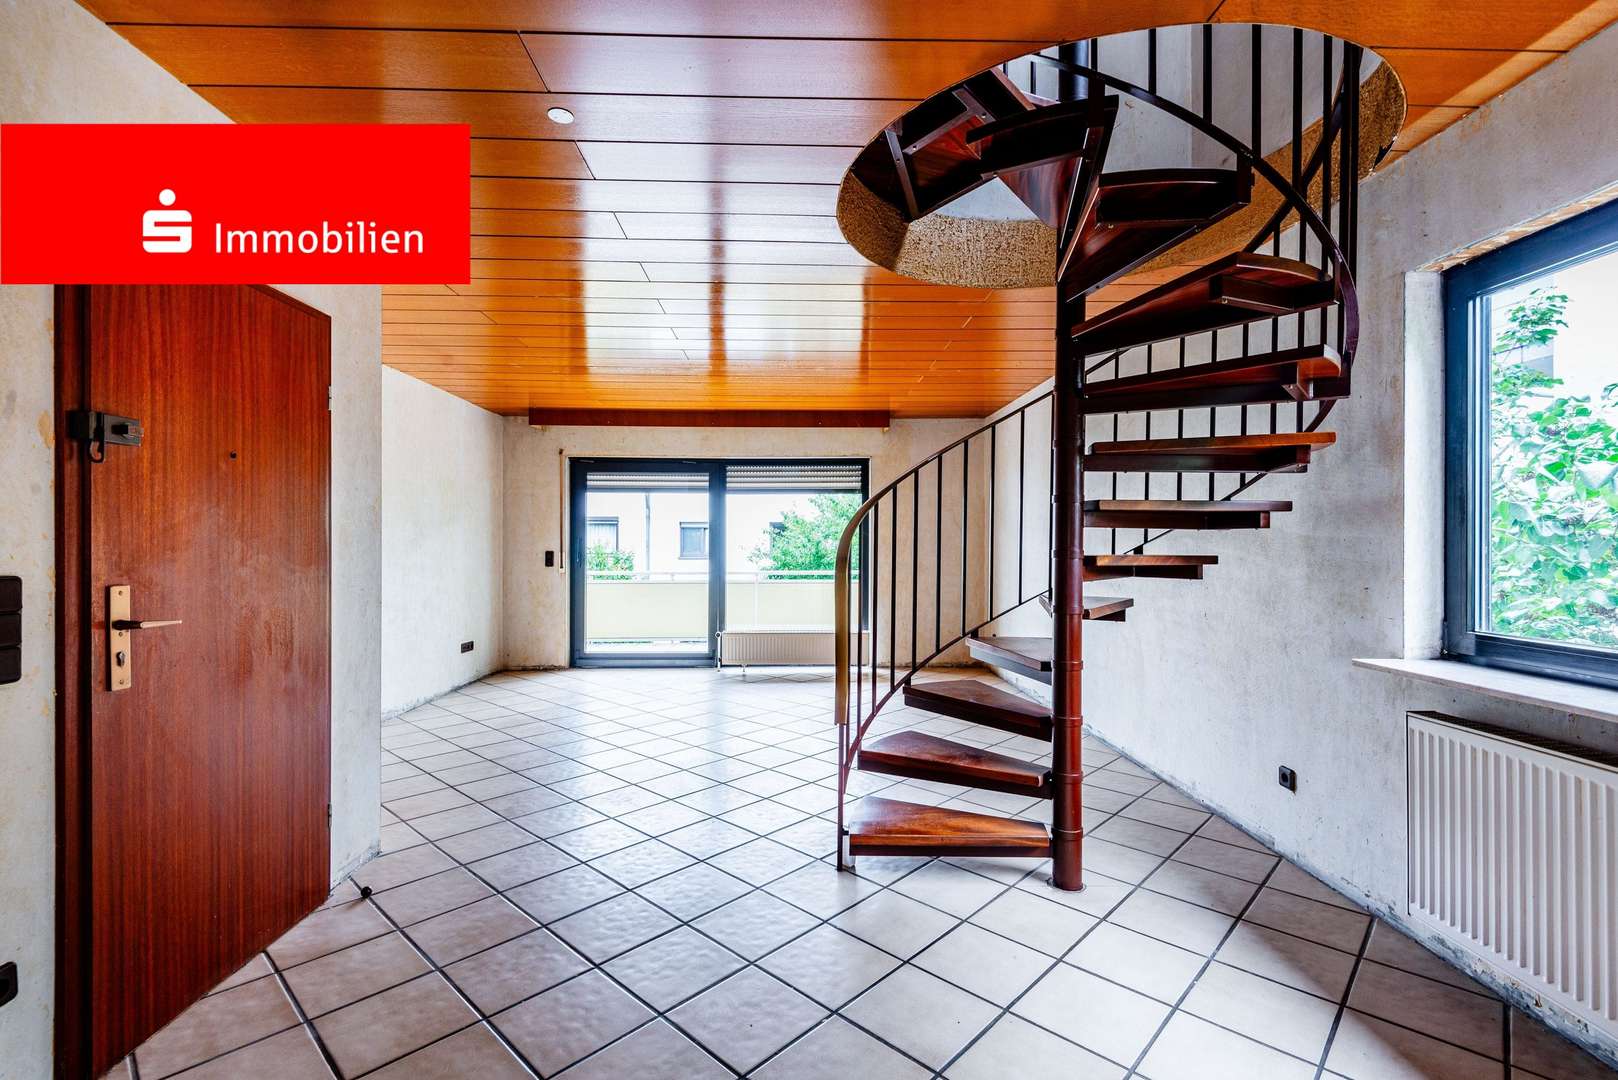 Wohn-/Essbereich 2. Obergeschoss - Maisonette-Wohnung in 63322 Rödermark mit 93m² kaufen